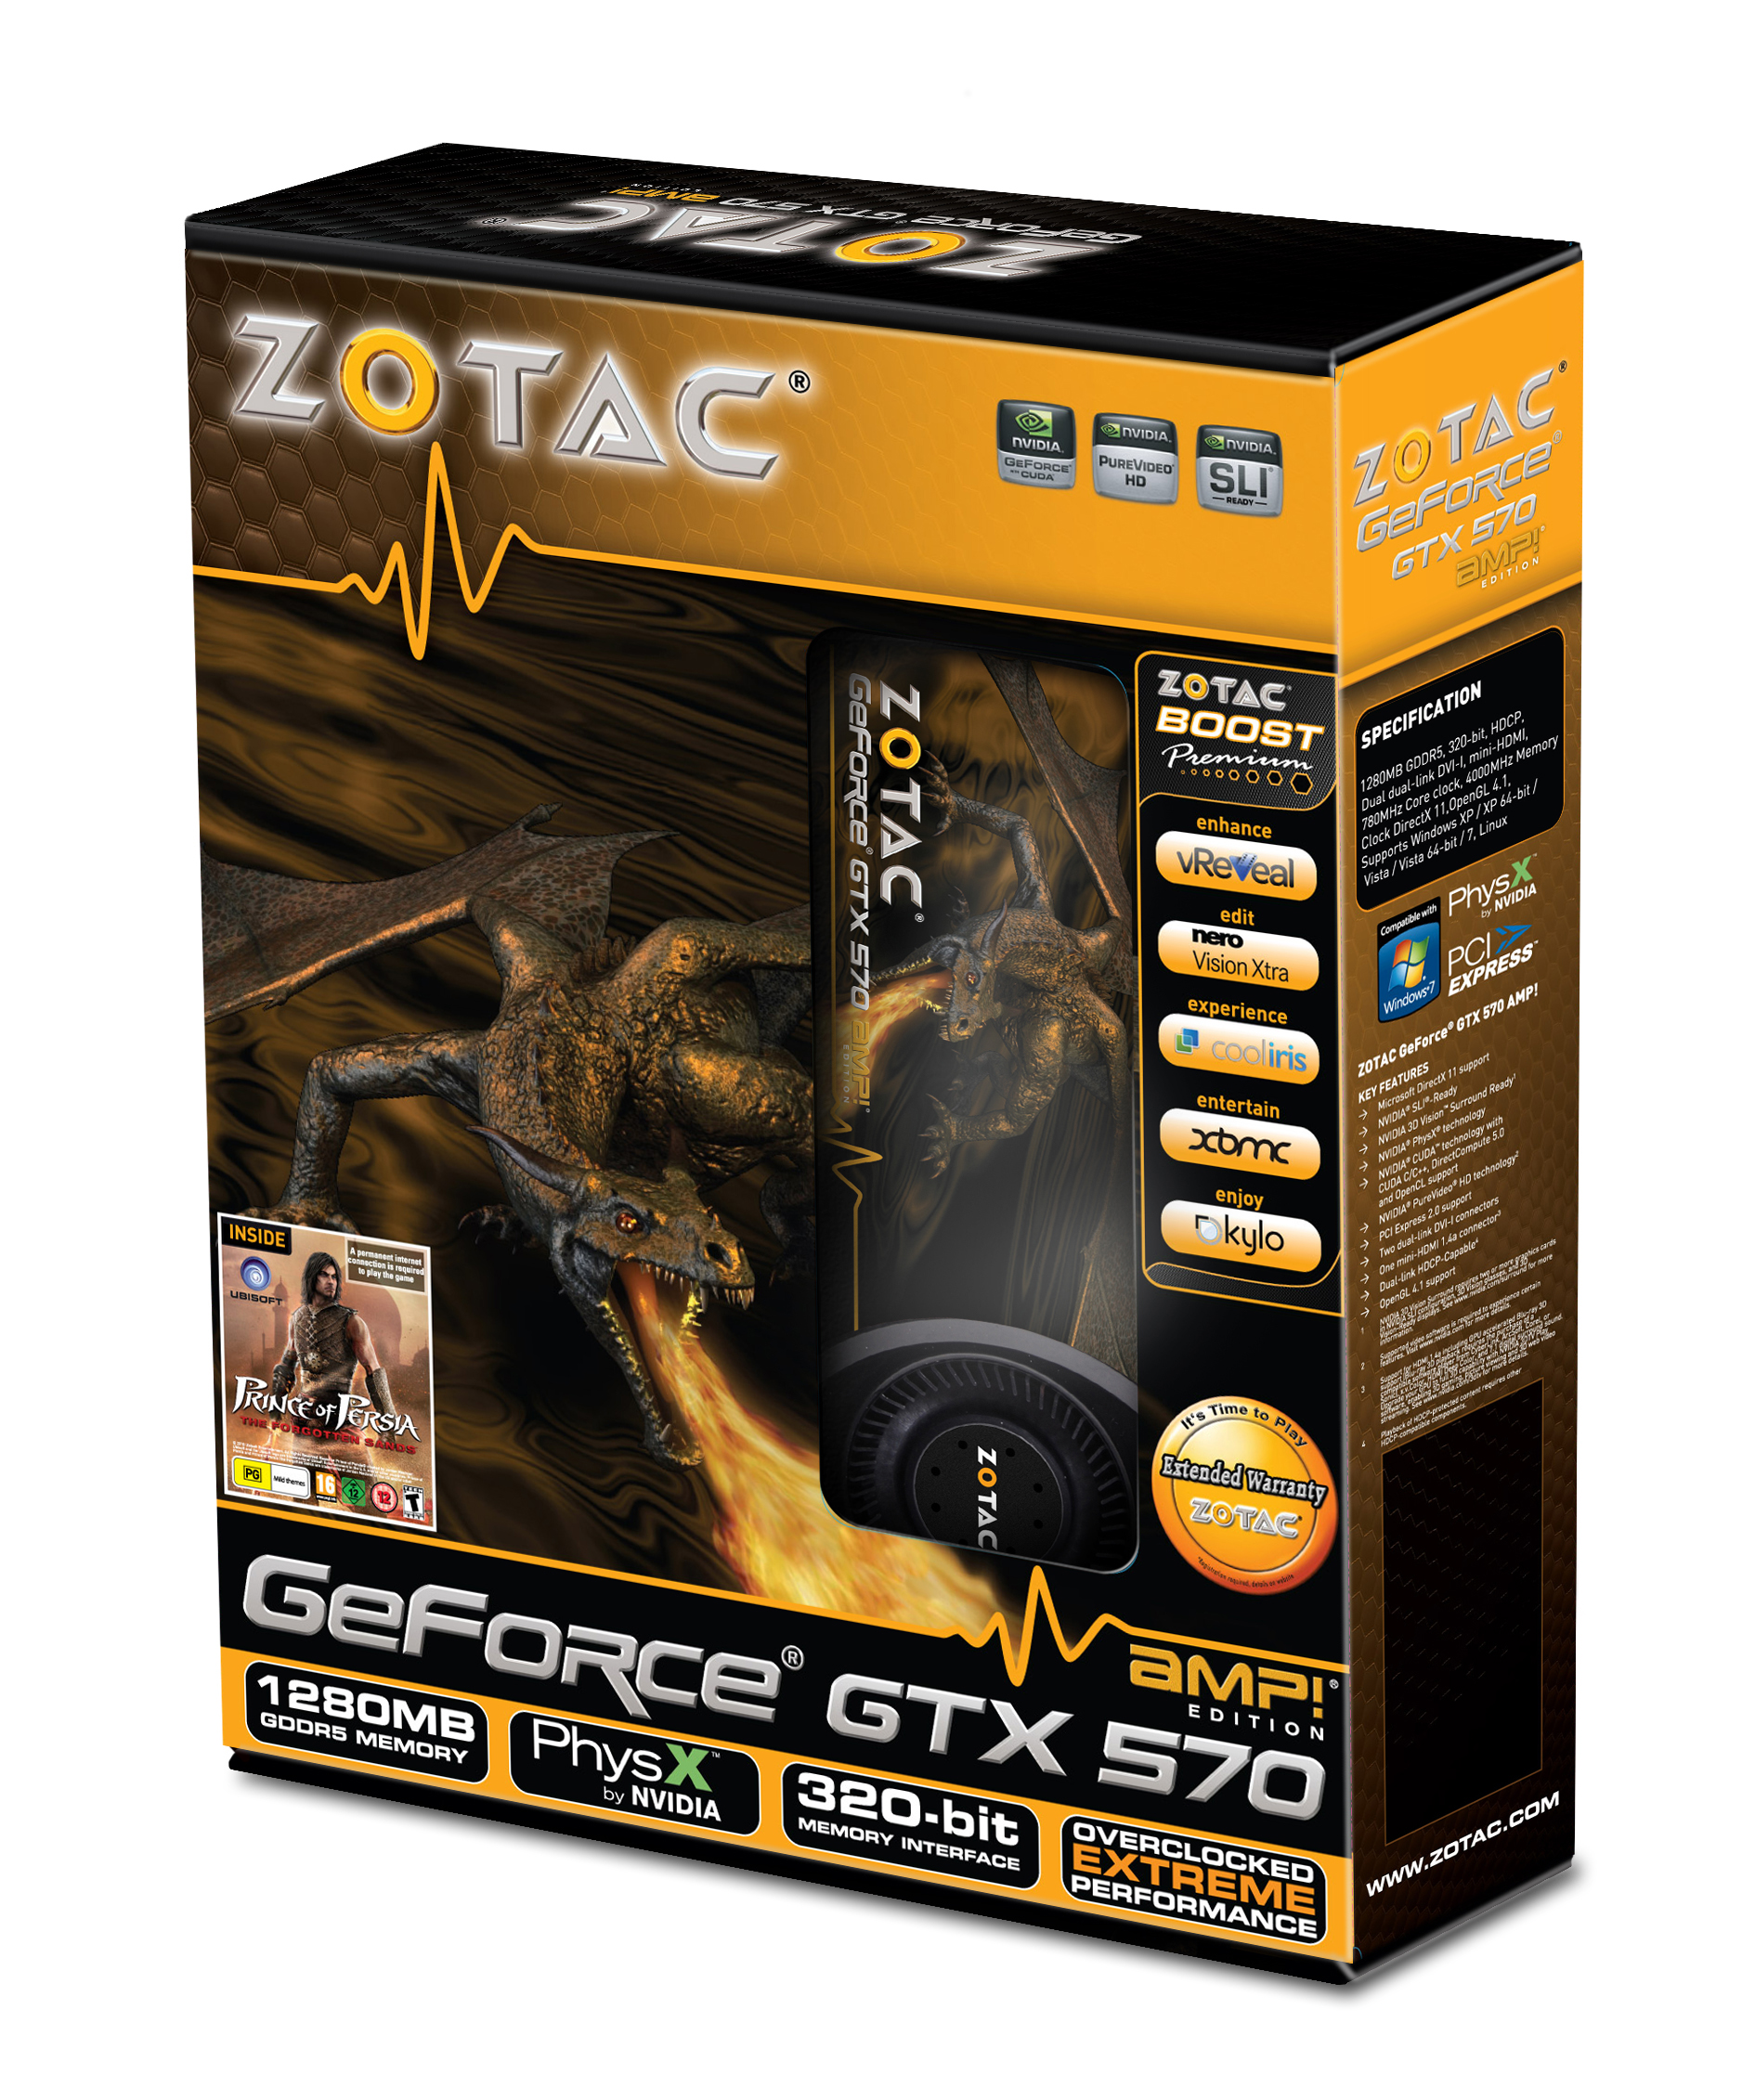 Zotac GeForce GTX 570 AMP! Edition 